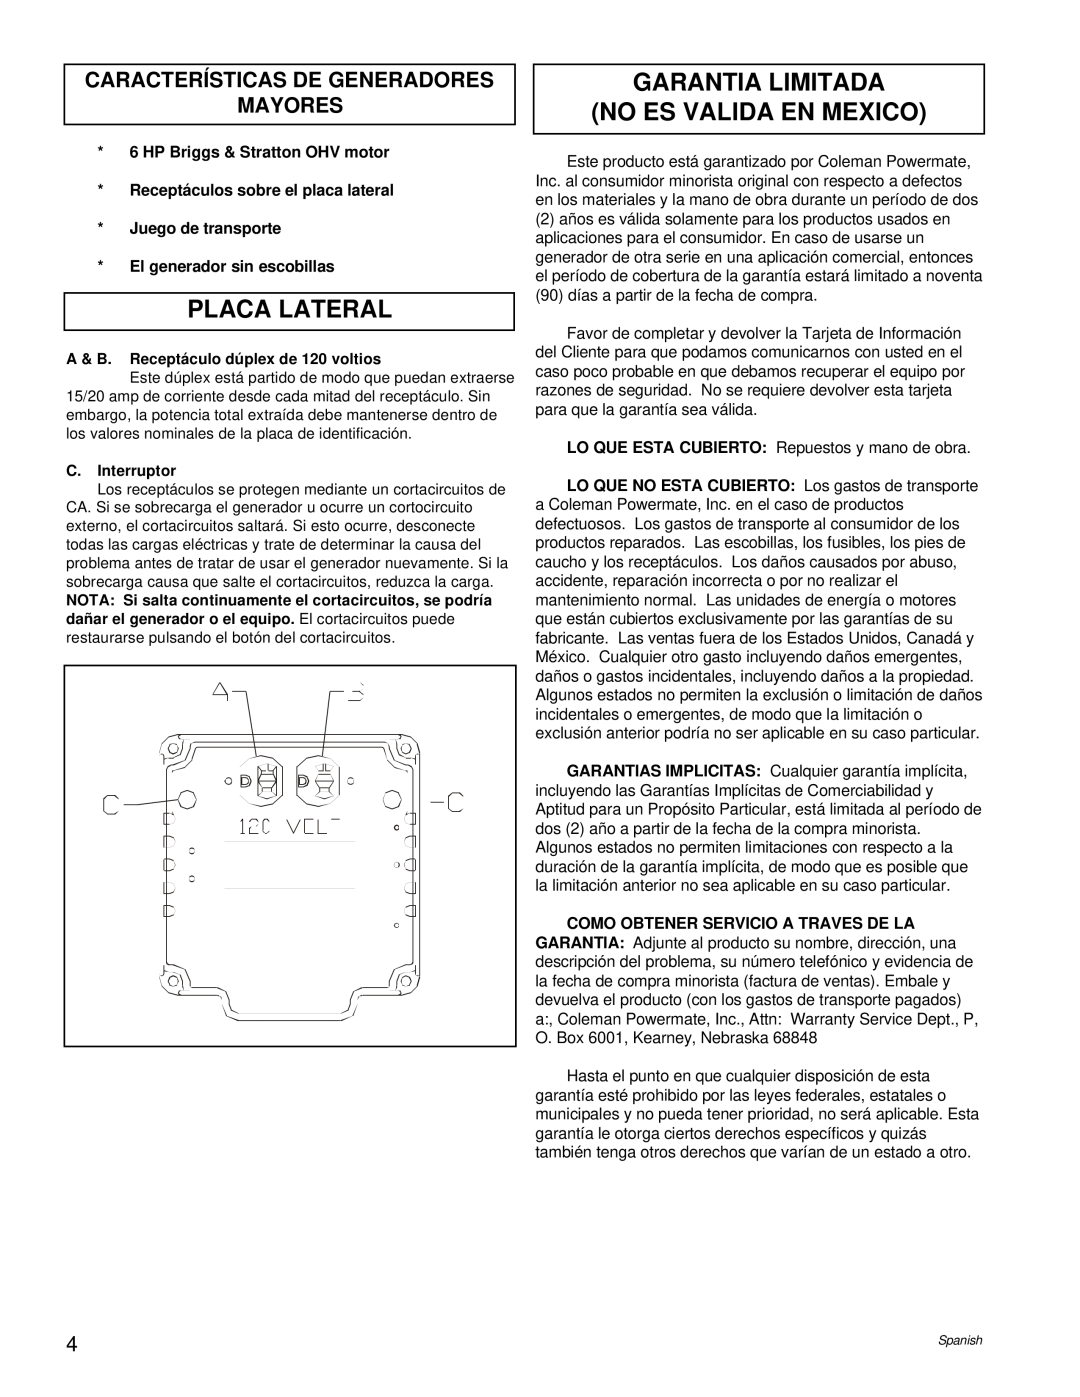 Powermate PC0543000.17 Placa Lateral, Garantia Limitada No Es Valida En Mexico, Características De Generadores Mayores 